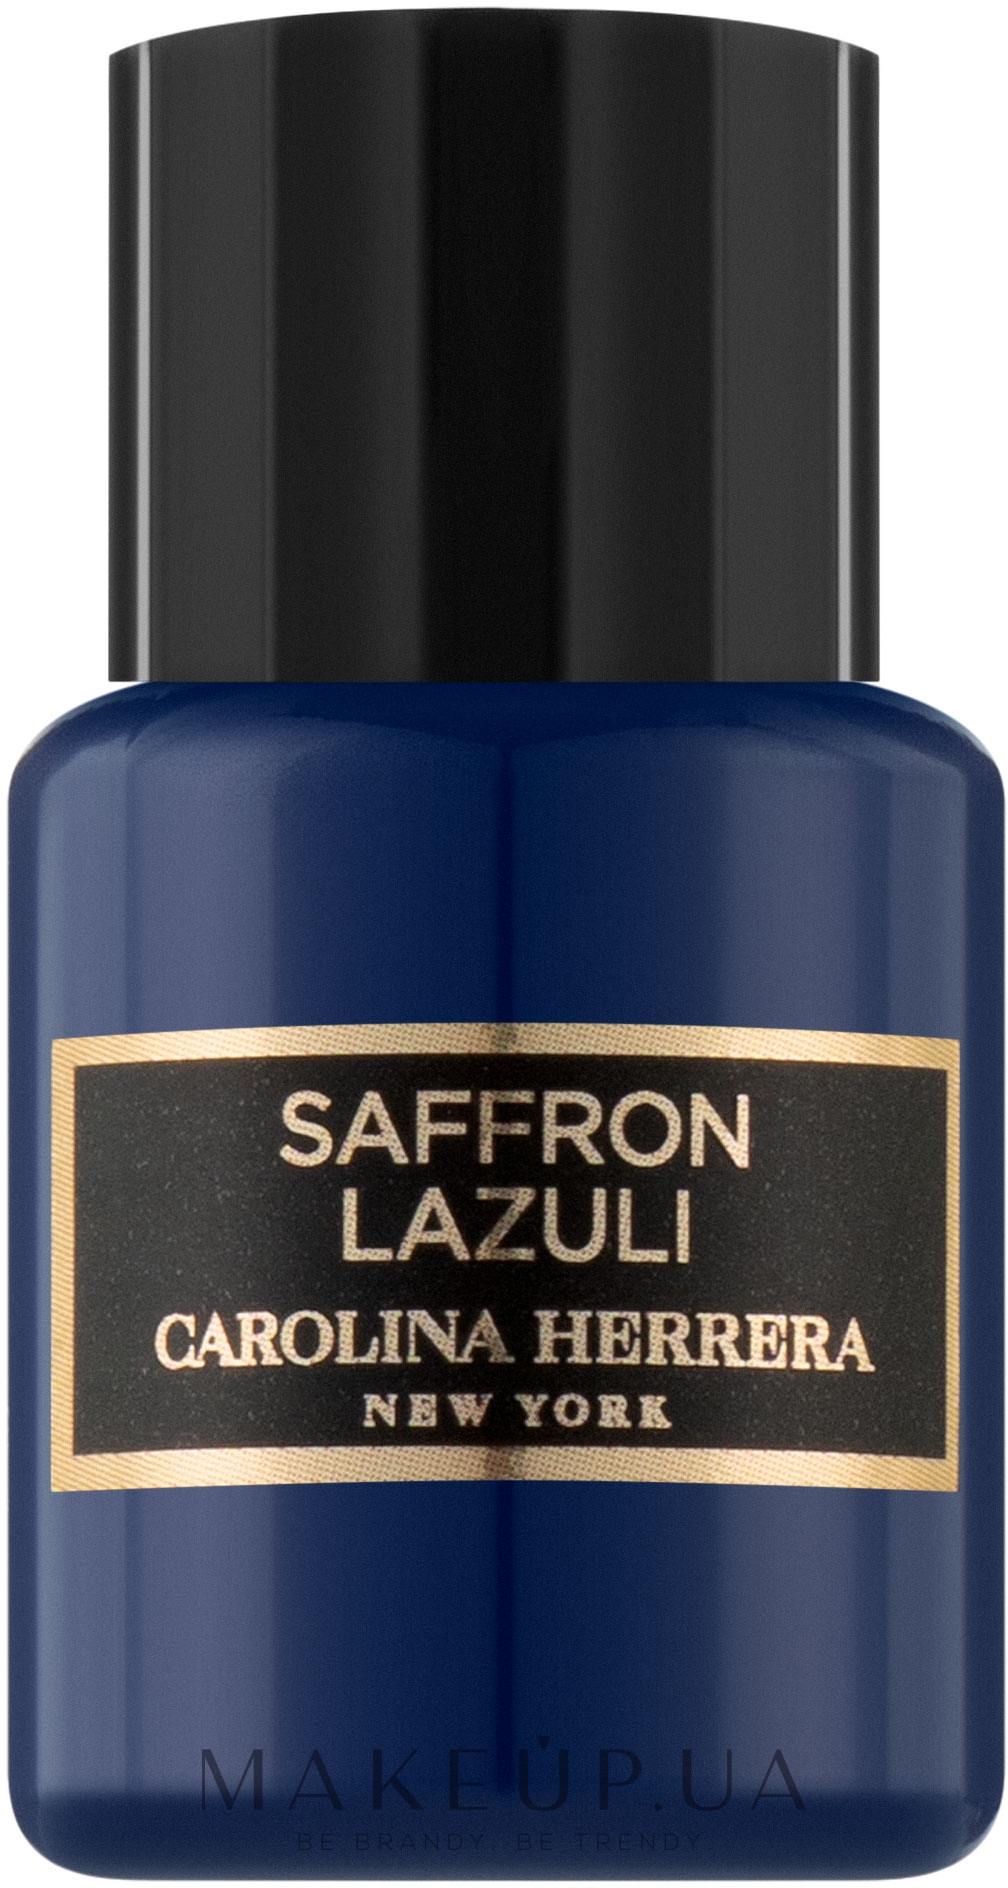 Carolina Herrera Saffron Lazuli - Парфюмированная вода (мини) — фото 5ml